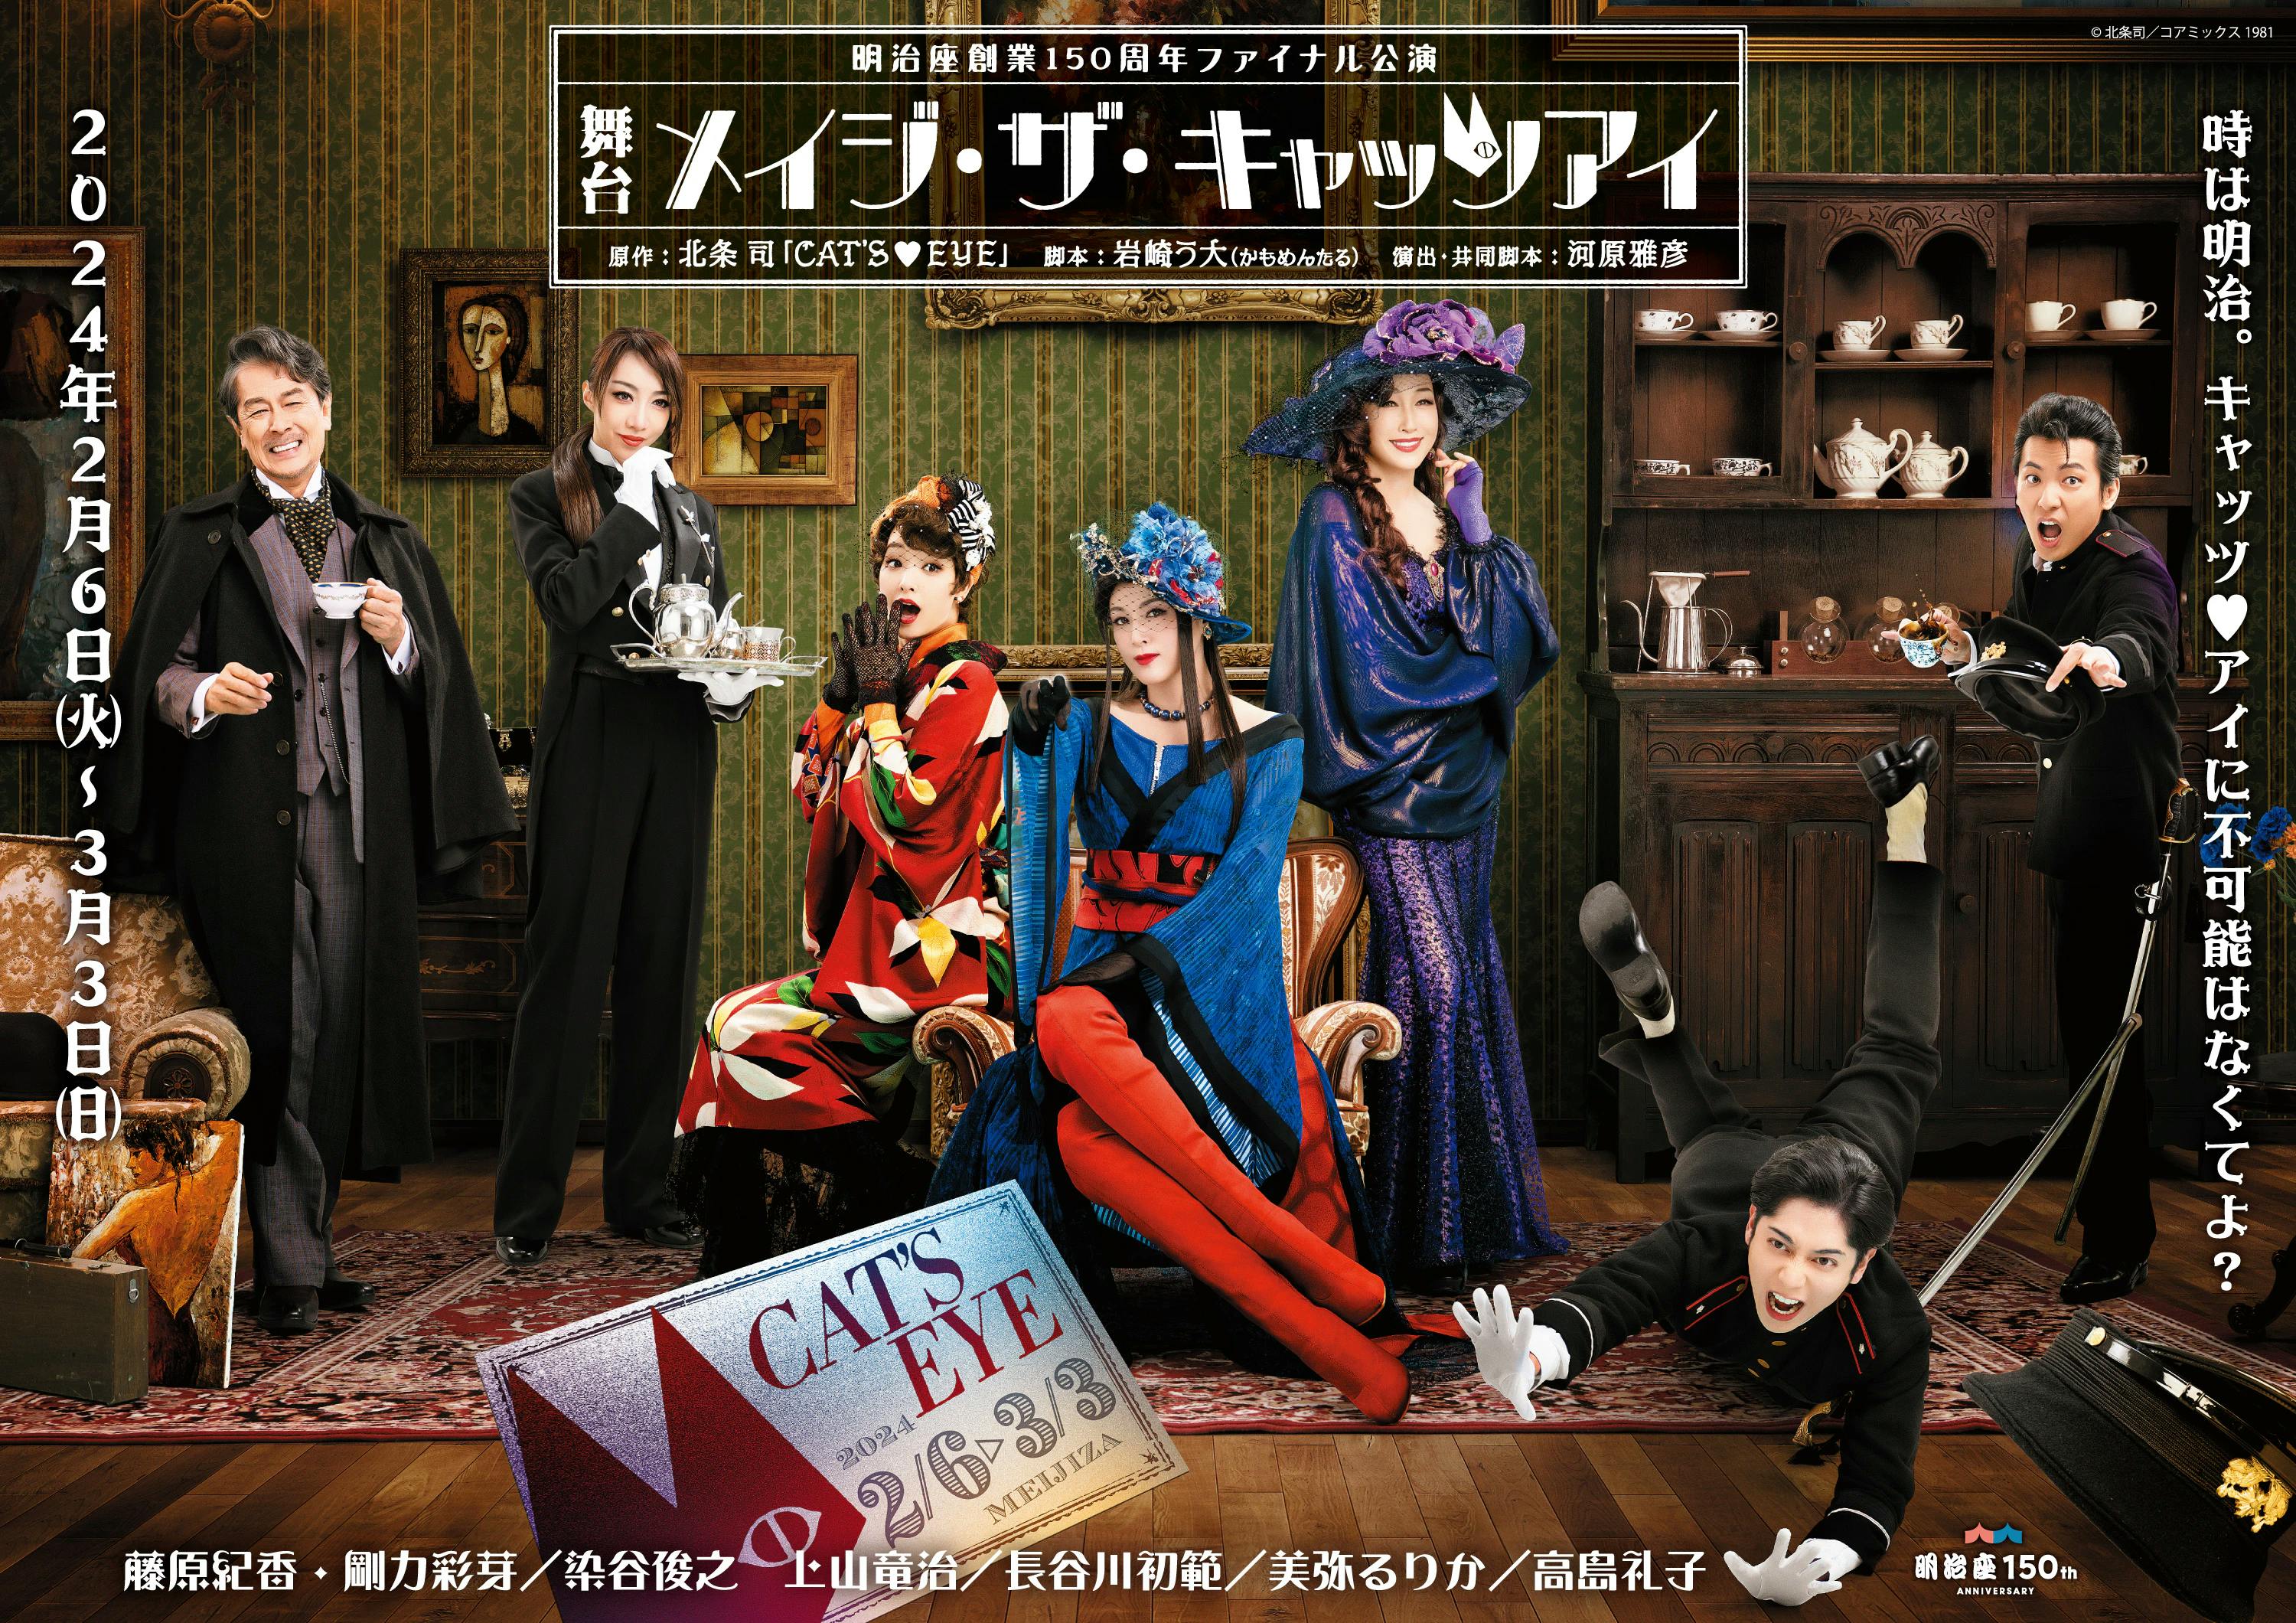 O segundo visual dos 7 membros do elenco principal da peça "Mage the Cat's Eye", estrelada por Norika Fujiwara, Ayame Goriki e Reiko Takashima, foi lançado!